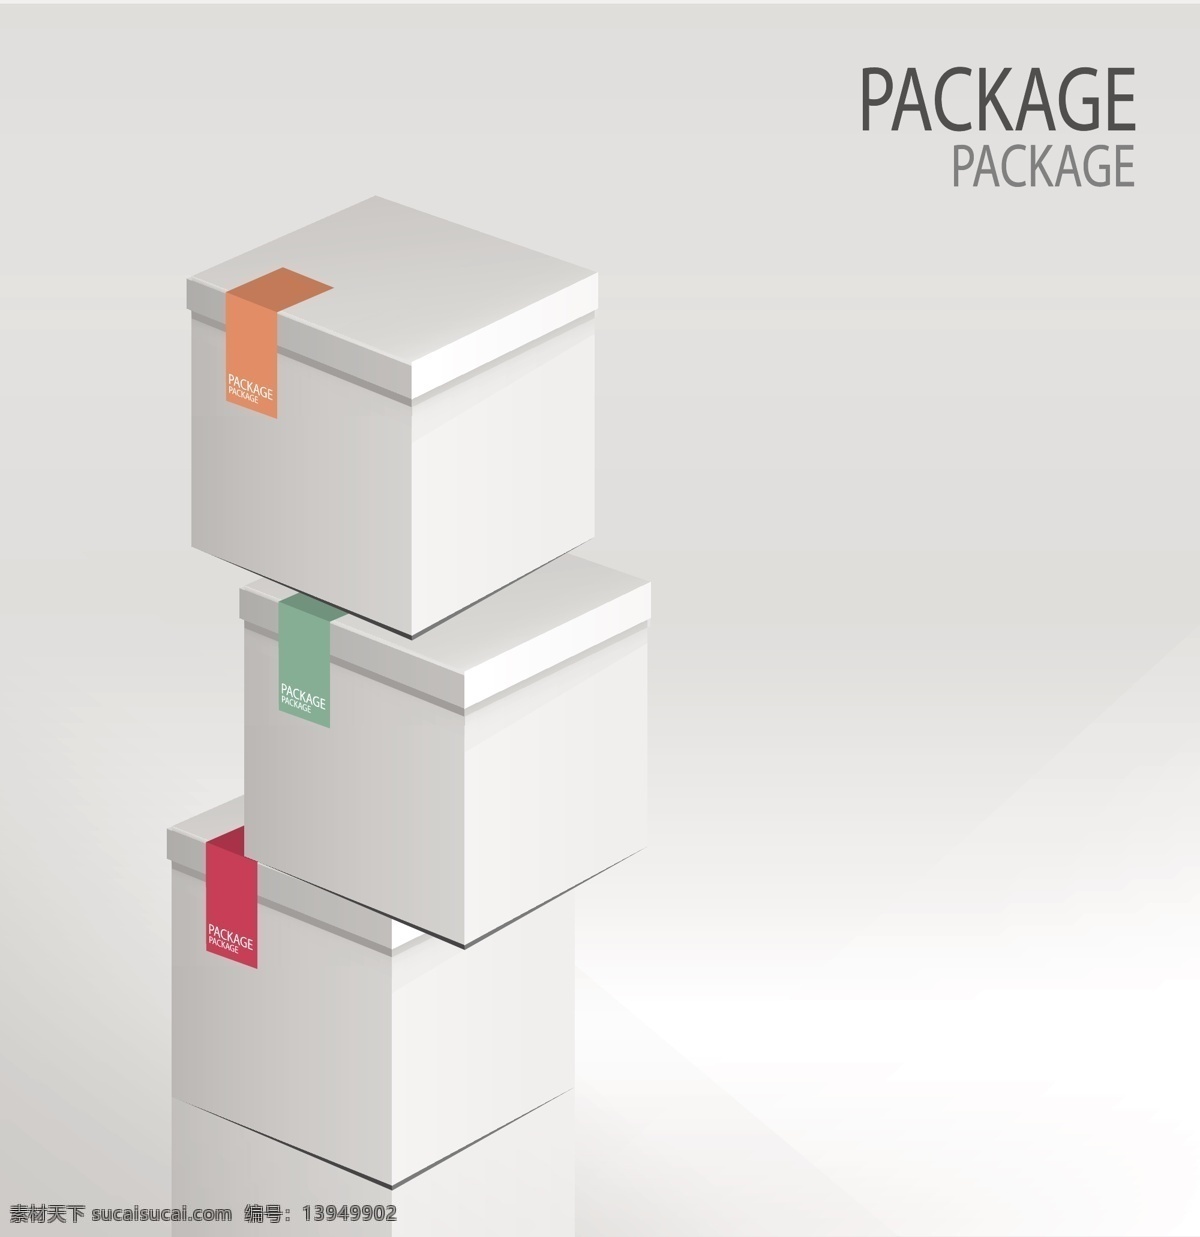 三个 包装盒 设计素材 堆放 设计元素 高清 源文件 叠放 广告装饰图案